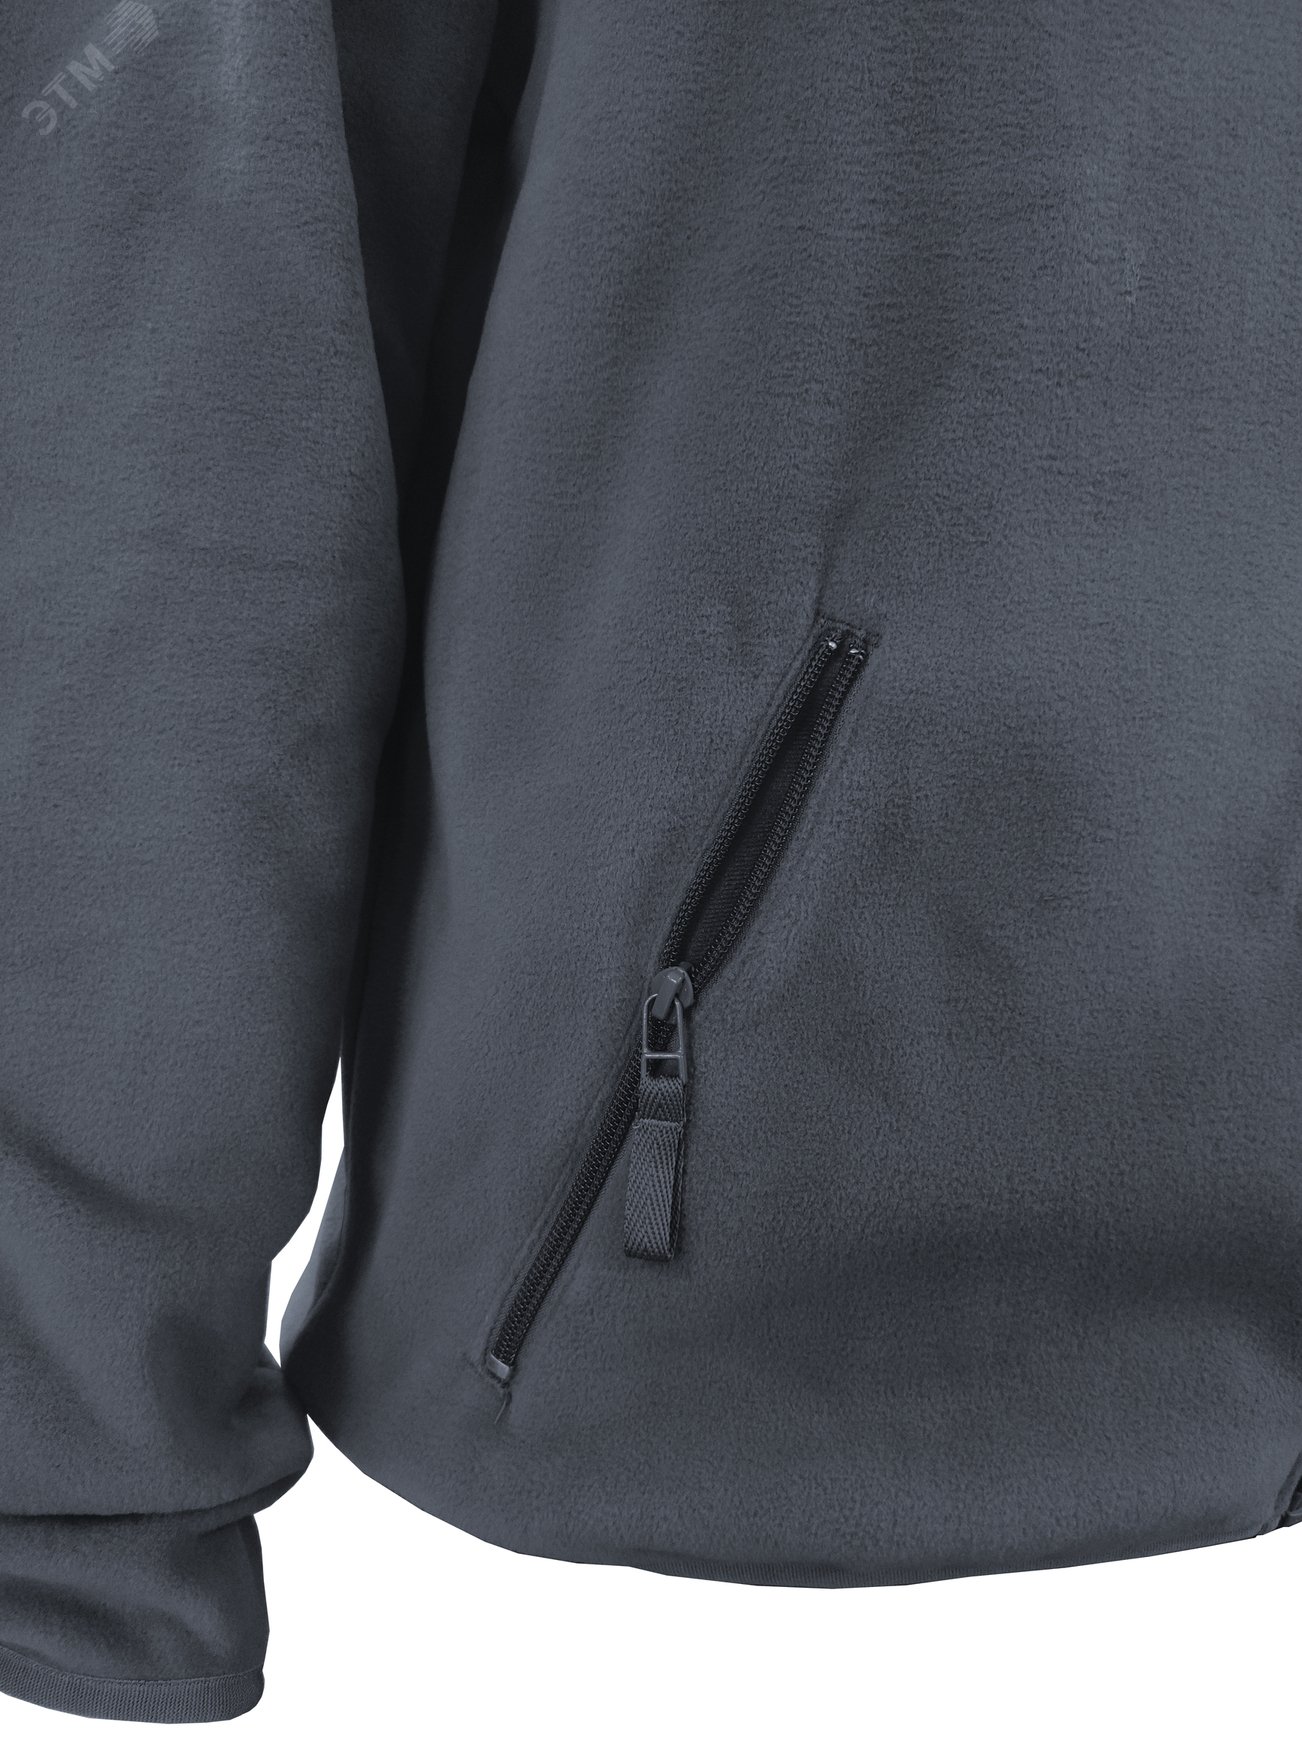 Куртка флисовая арт. JF-01 на молнии цв. серый 44-46 р. S 142302 Эталон-Спецодежда - превью 8